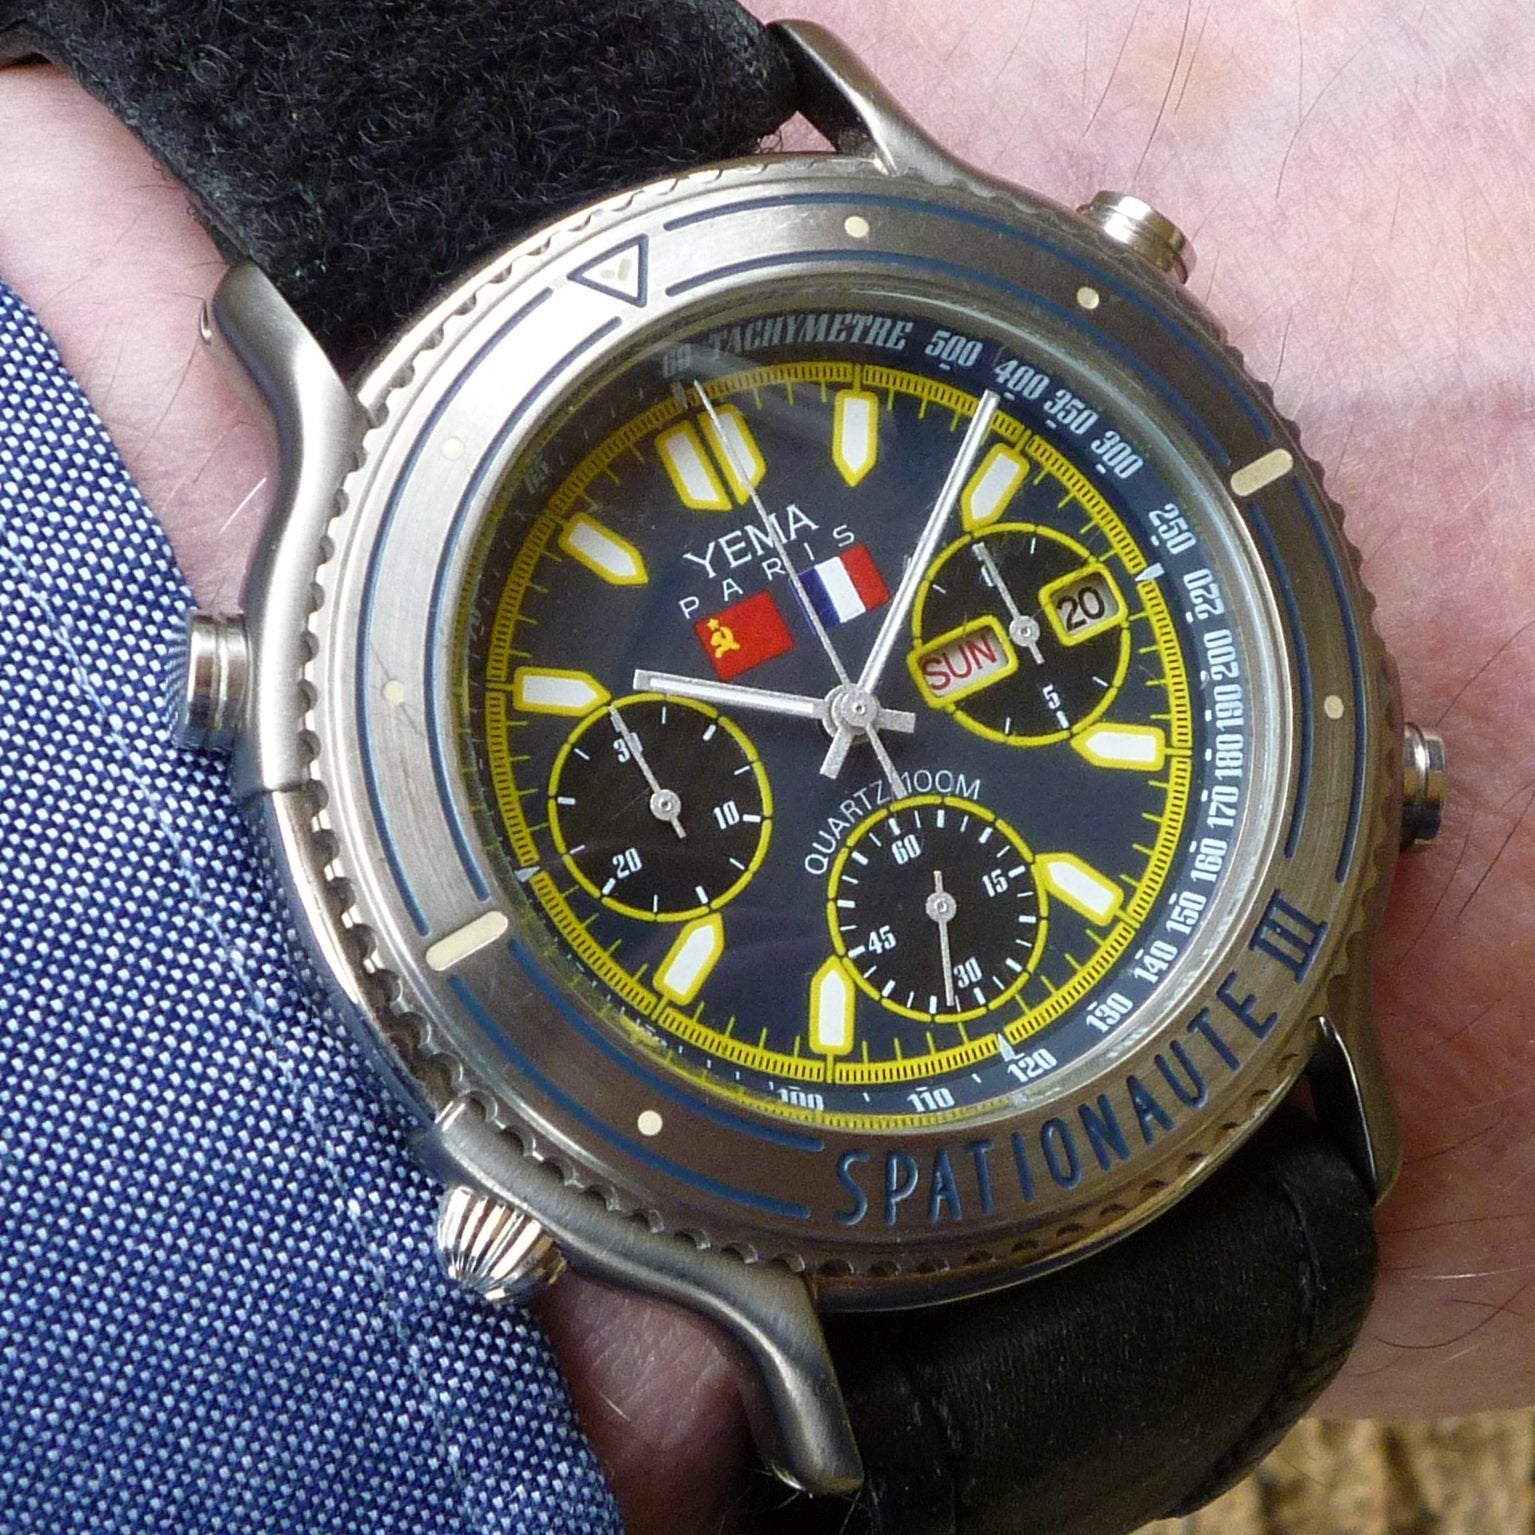 Recherche photos de la montre Yema Spationaute III Aragatz de Jean-Loup Chrétien. - Page 2 P1910046-crop-jpg